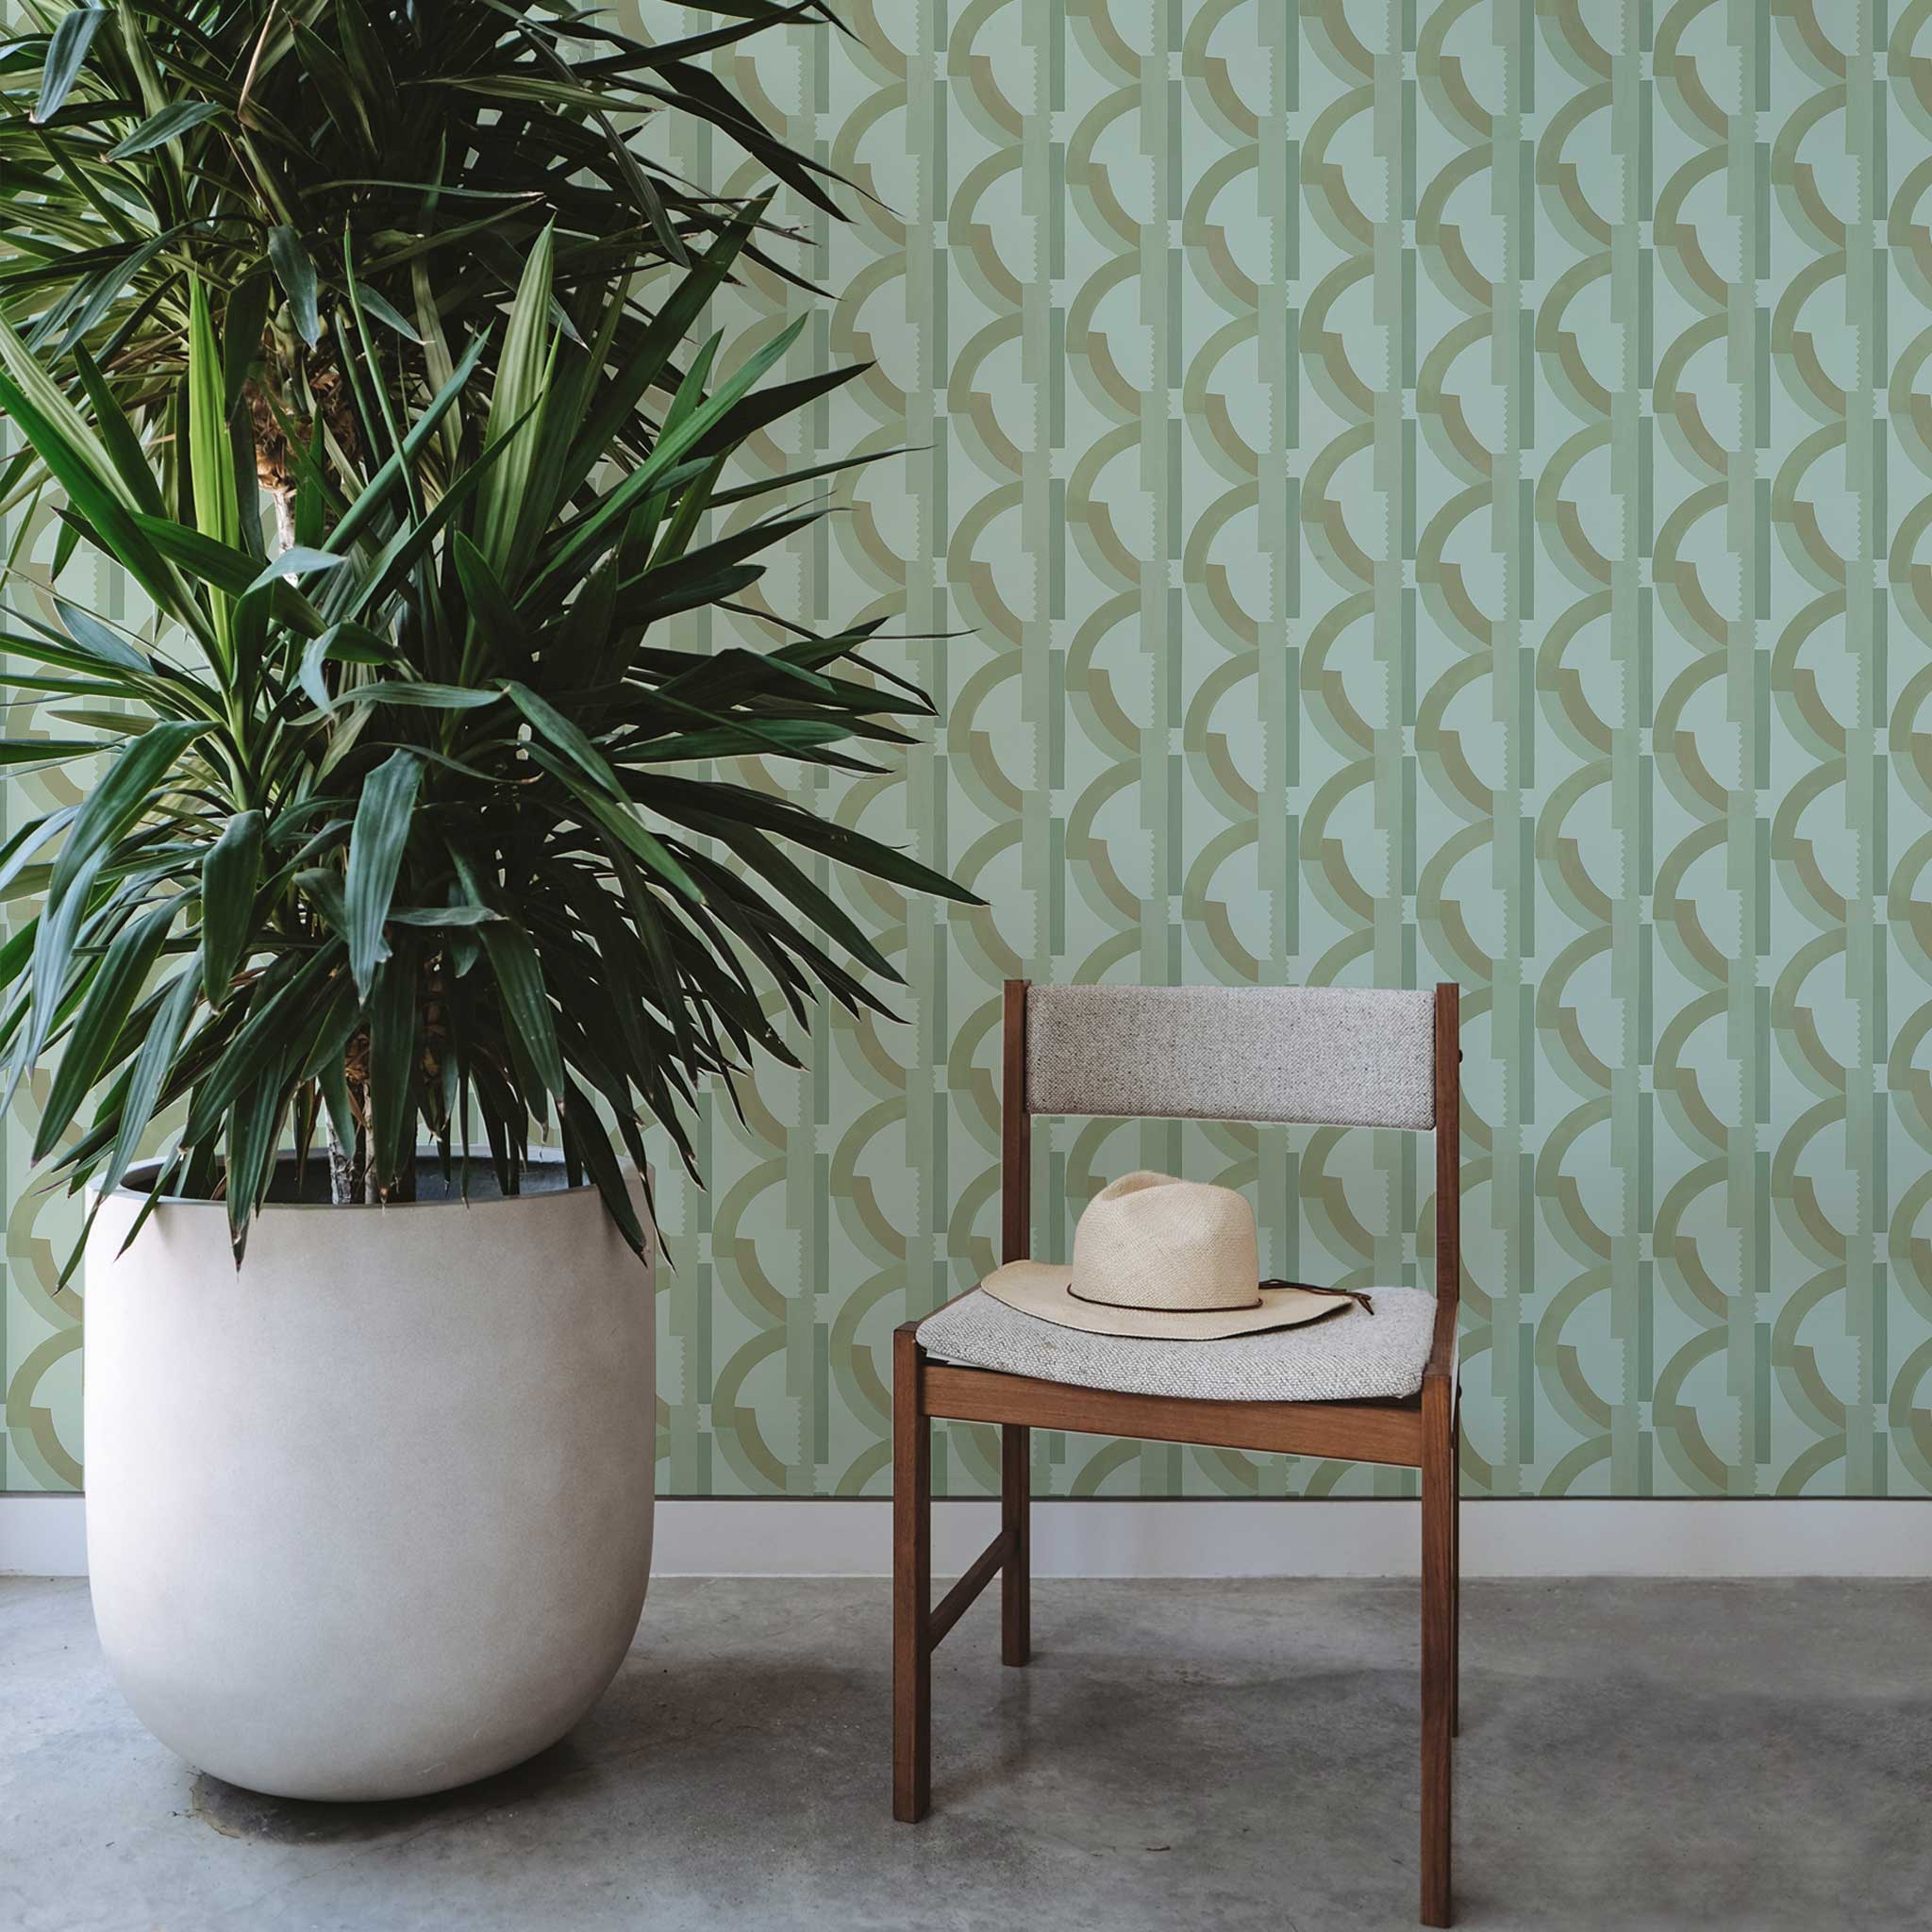 Habita wallpaper design - green Lucie pattern in bedroom